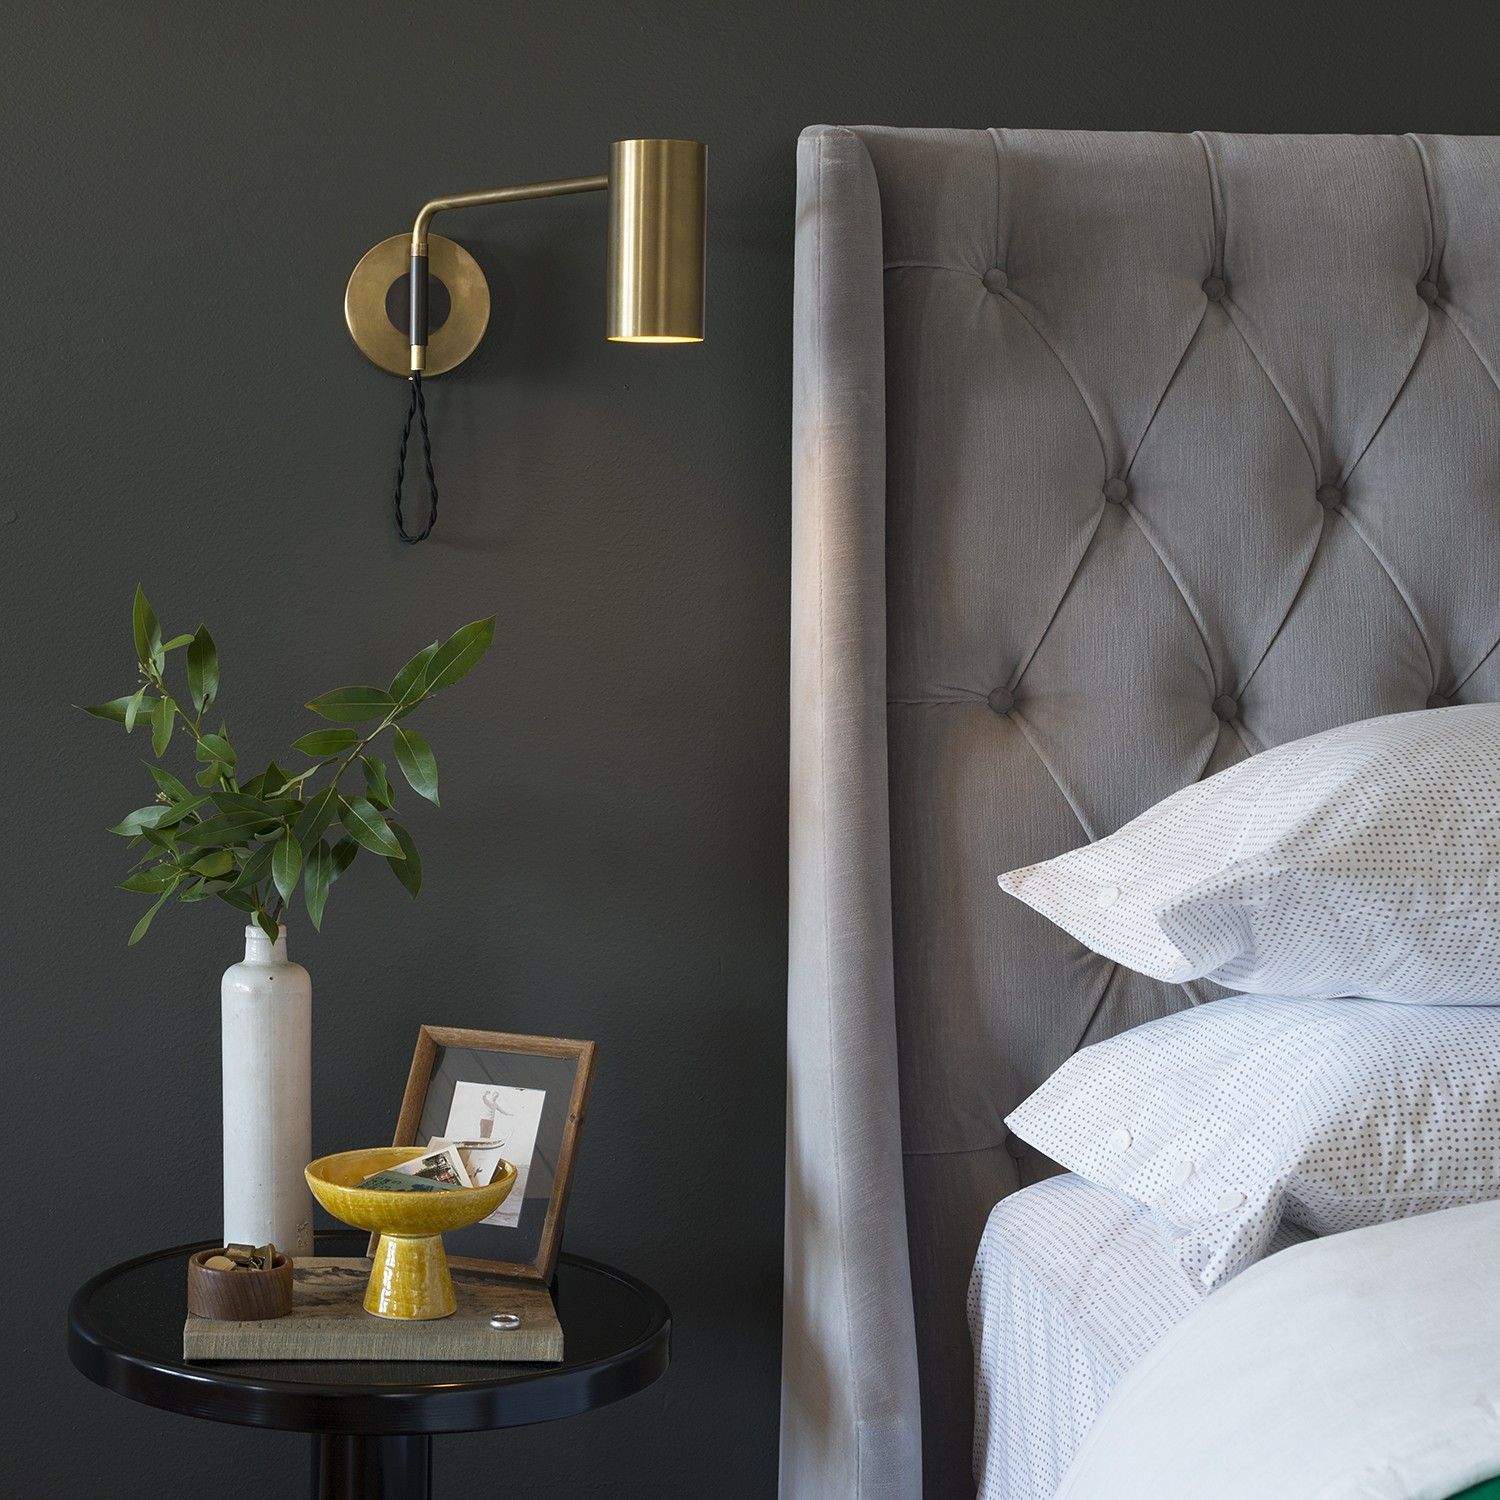 Đèn gắn tường đầu giường: Những lưu ý để chọn được thiết kế ưng ý nhất - Ảnh 2